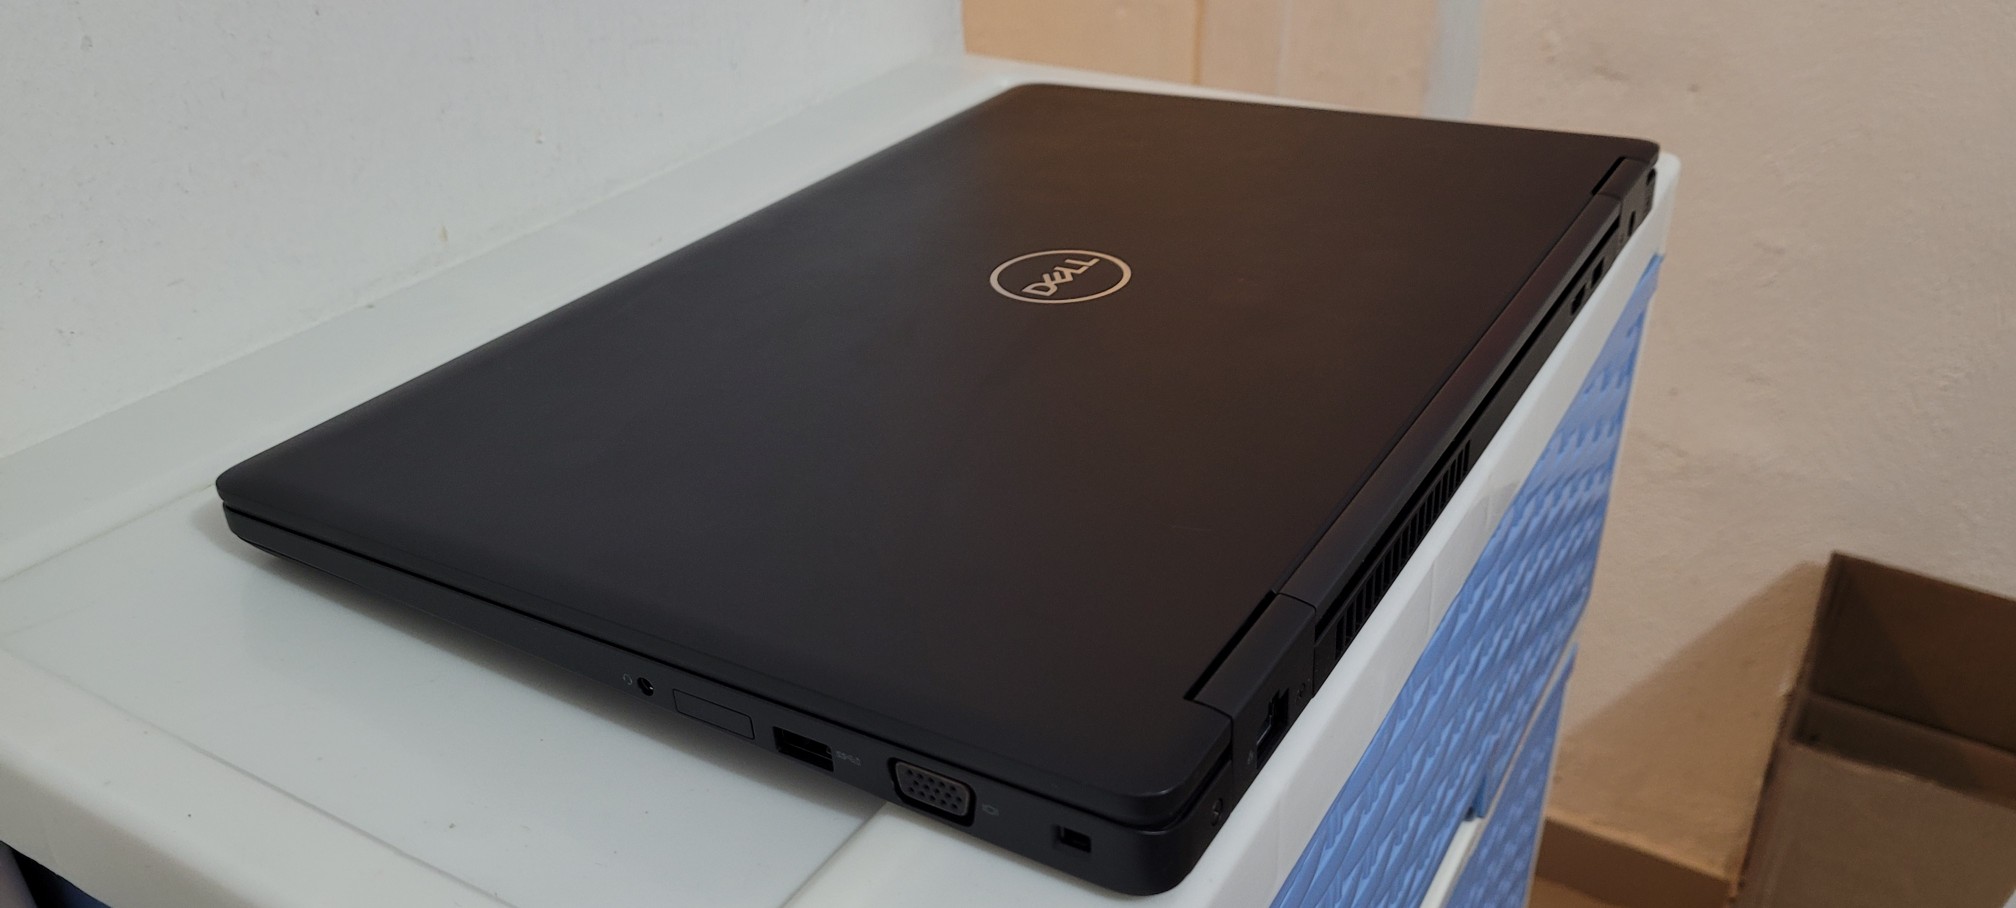 computadoras y laptops - Dell 5590 de 17 Pulg Core i5 8va Gen Ram 16gb Disco 512gb SSD full 1080p 2